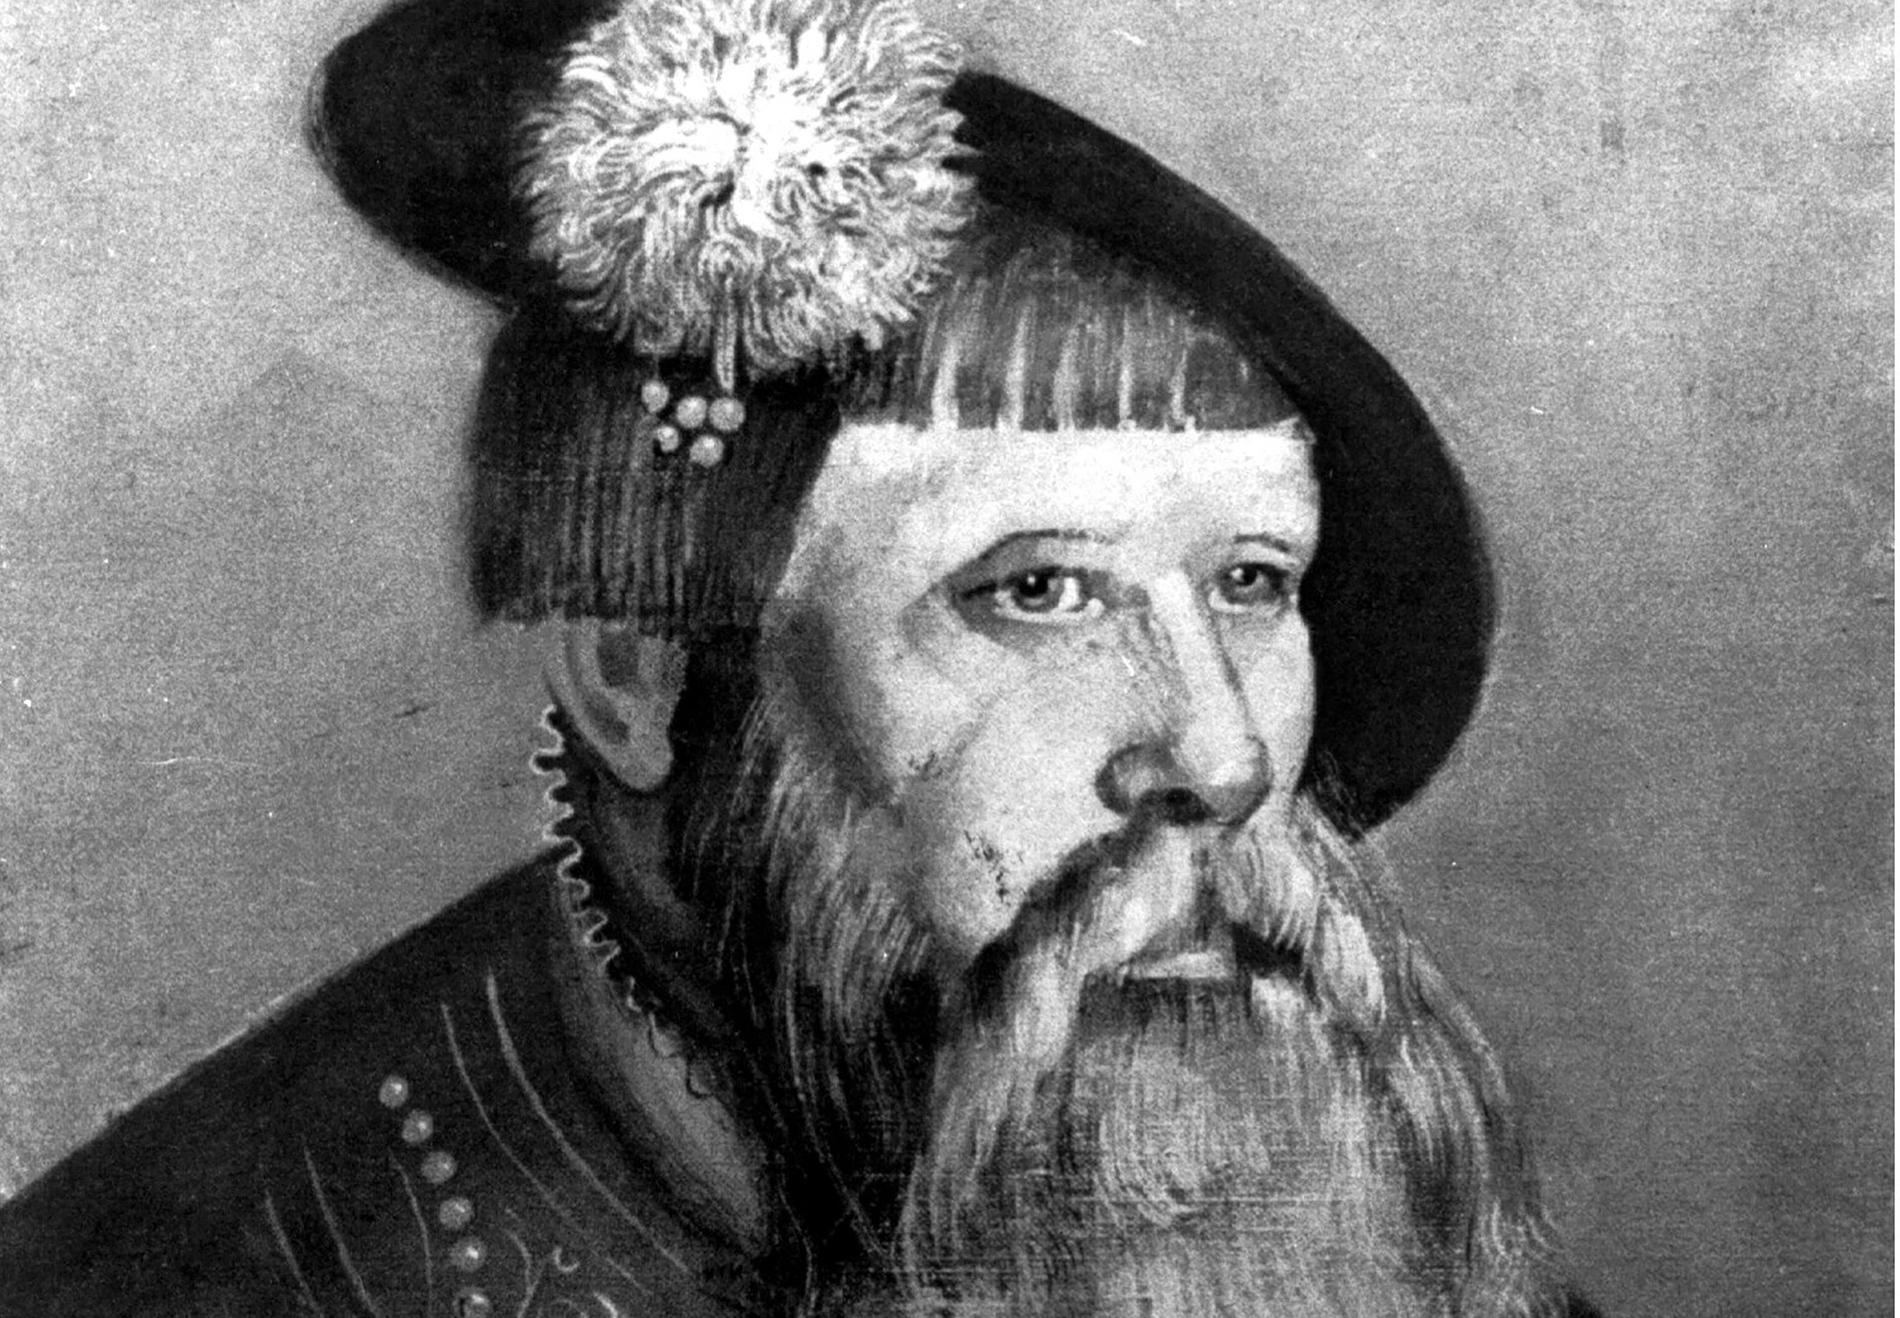 Gustav Eriksson från Vasaätten (det var först på 1700-talet man började kalla honom för Gustav Vasa) valdes till kung den 6 juni 1523.